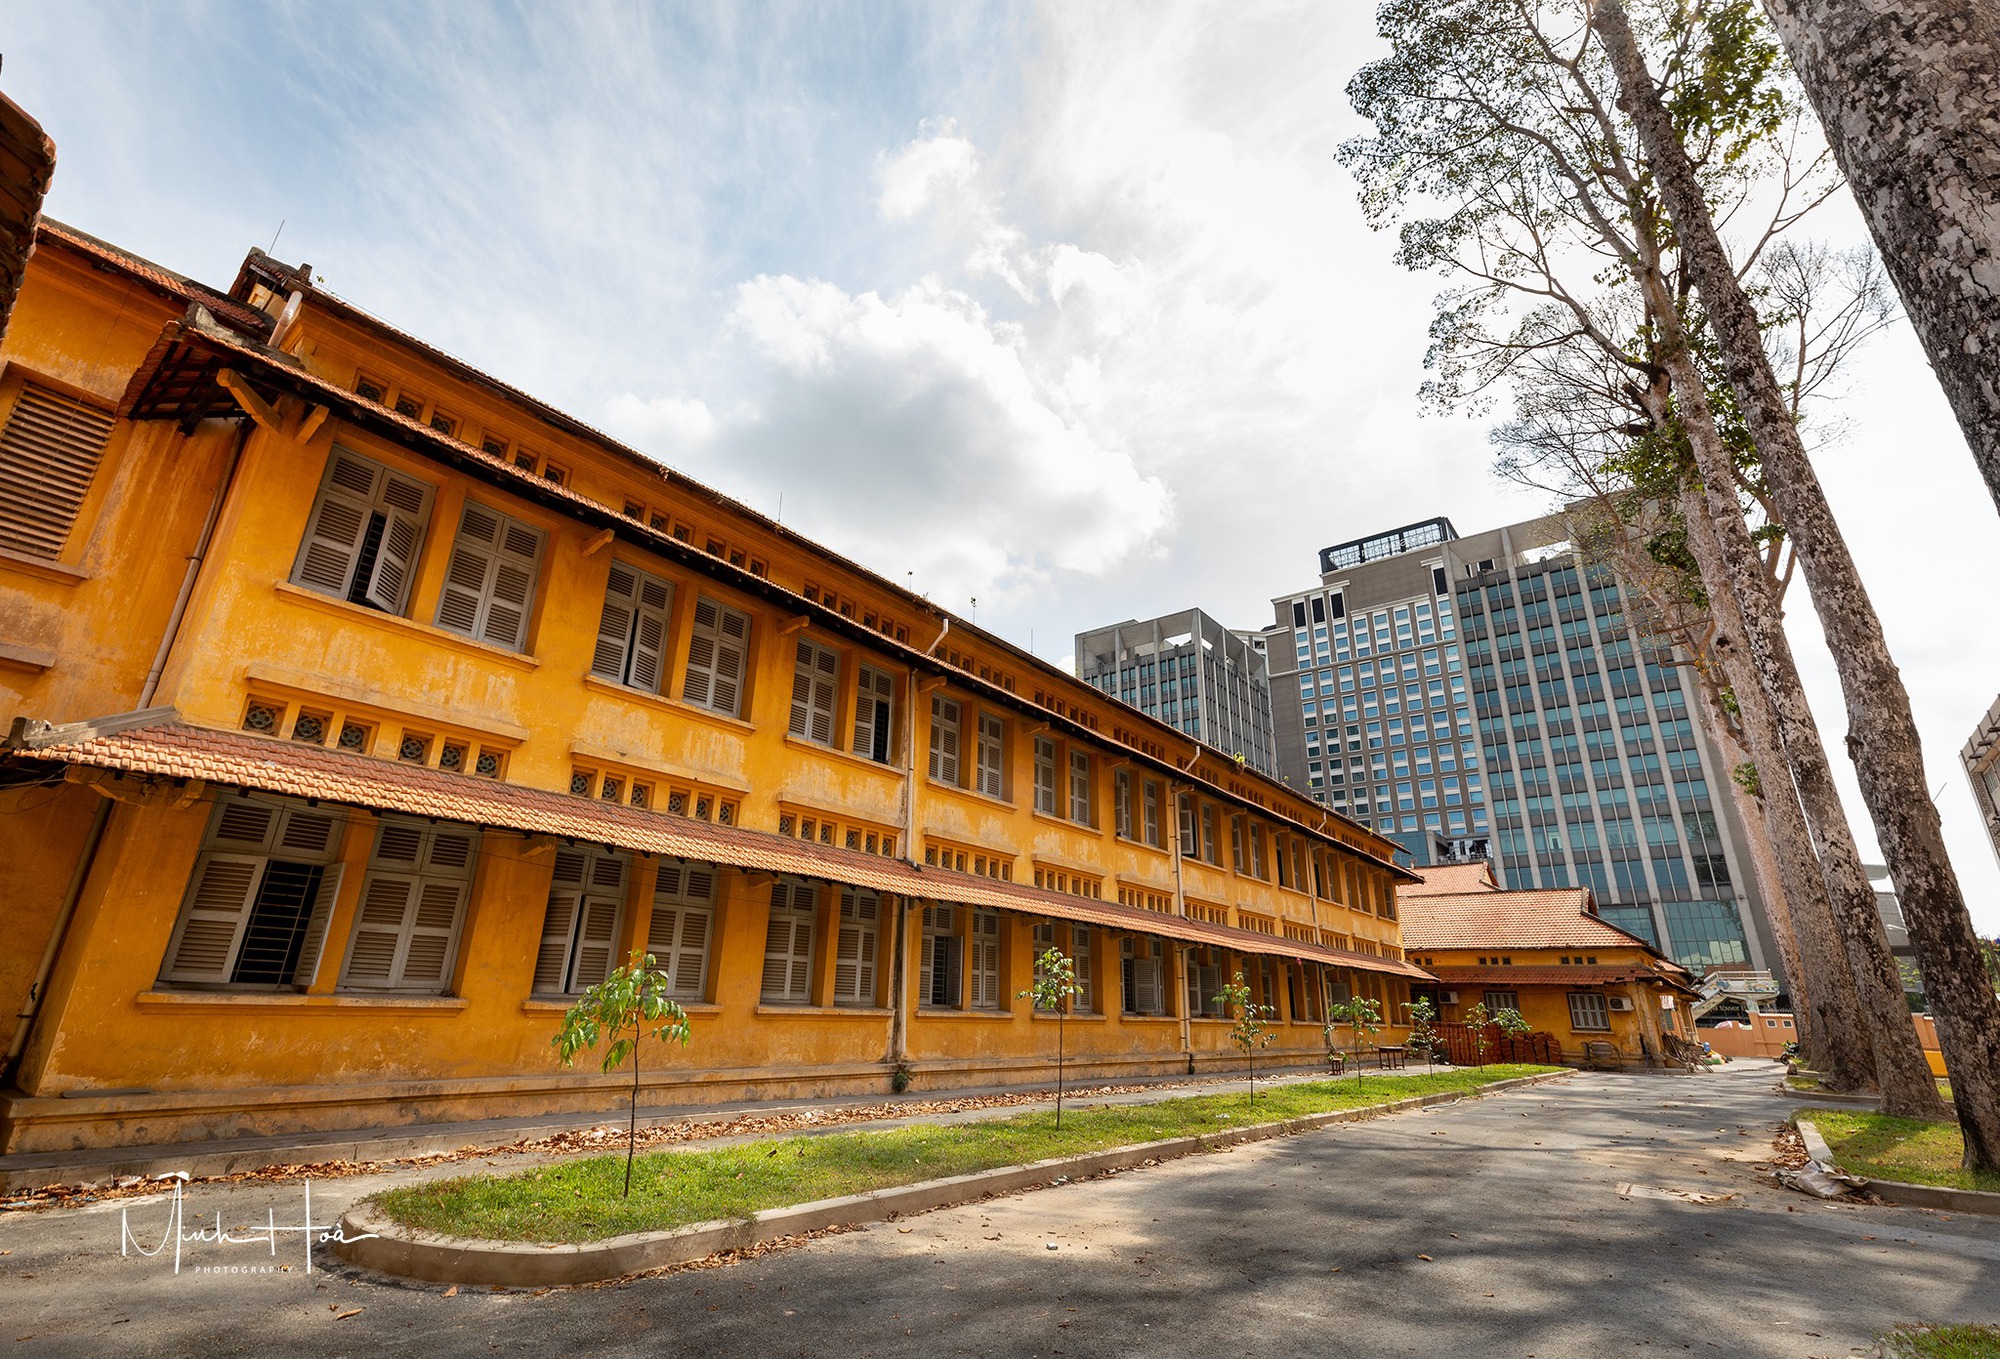 Kiến trúc độc đáo của ngôi trường gần 100 tuổi, nơi 2 vị nguyên Chủ tịch nước từng học  - Ảnh 10.